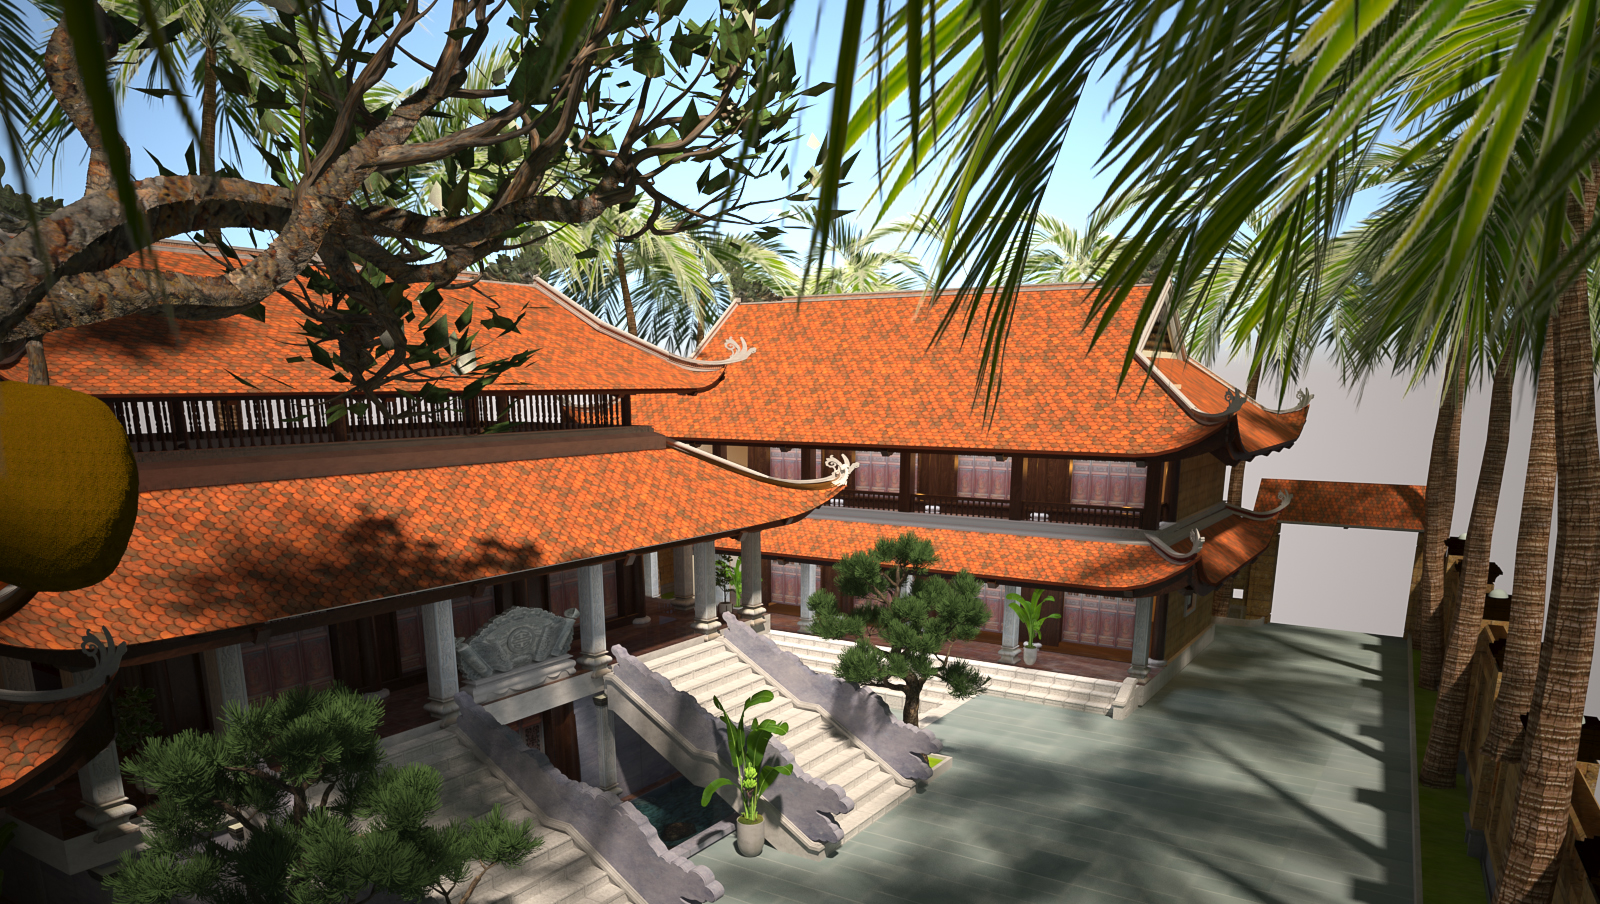 Thiết kế Nhà tại Nam Định Anh Nam - Nam Định 1644112937 3